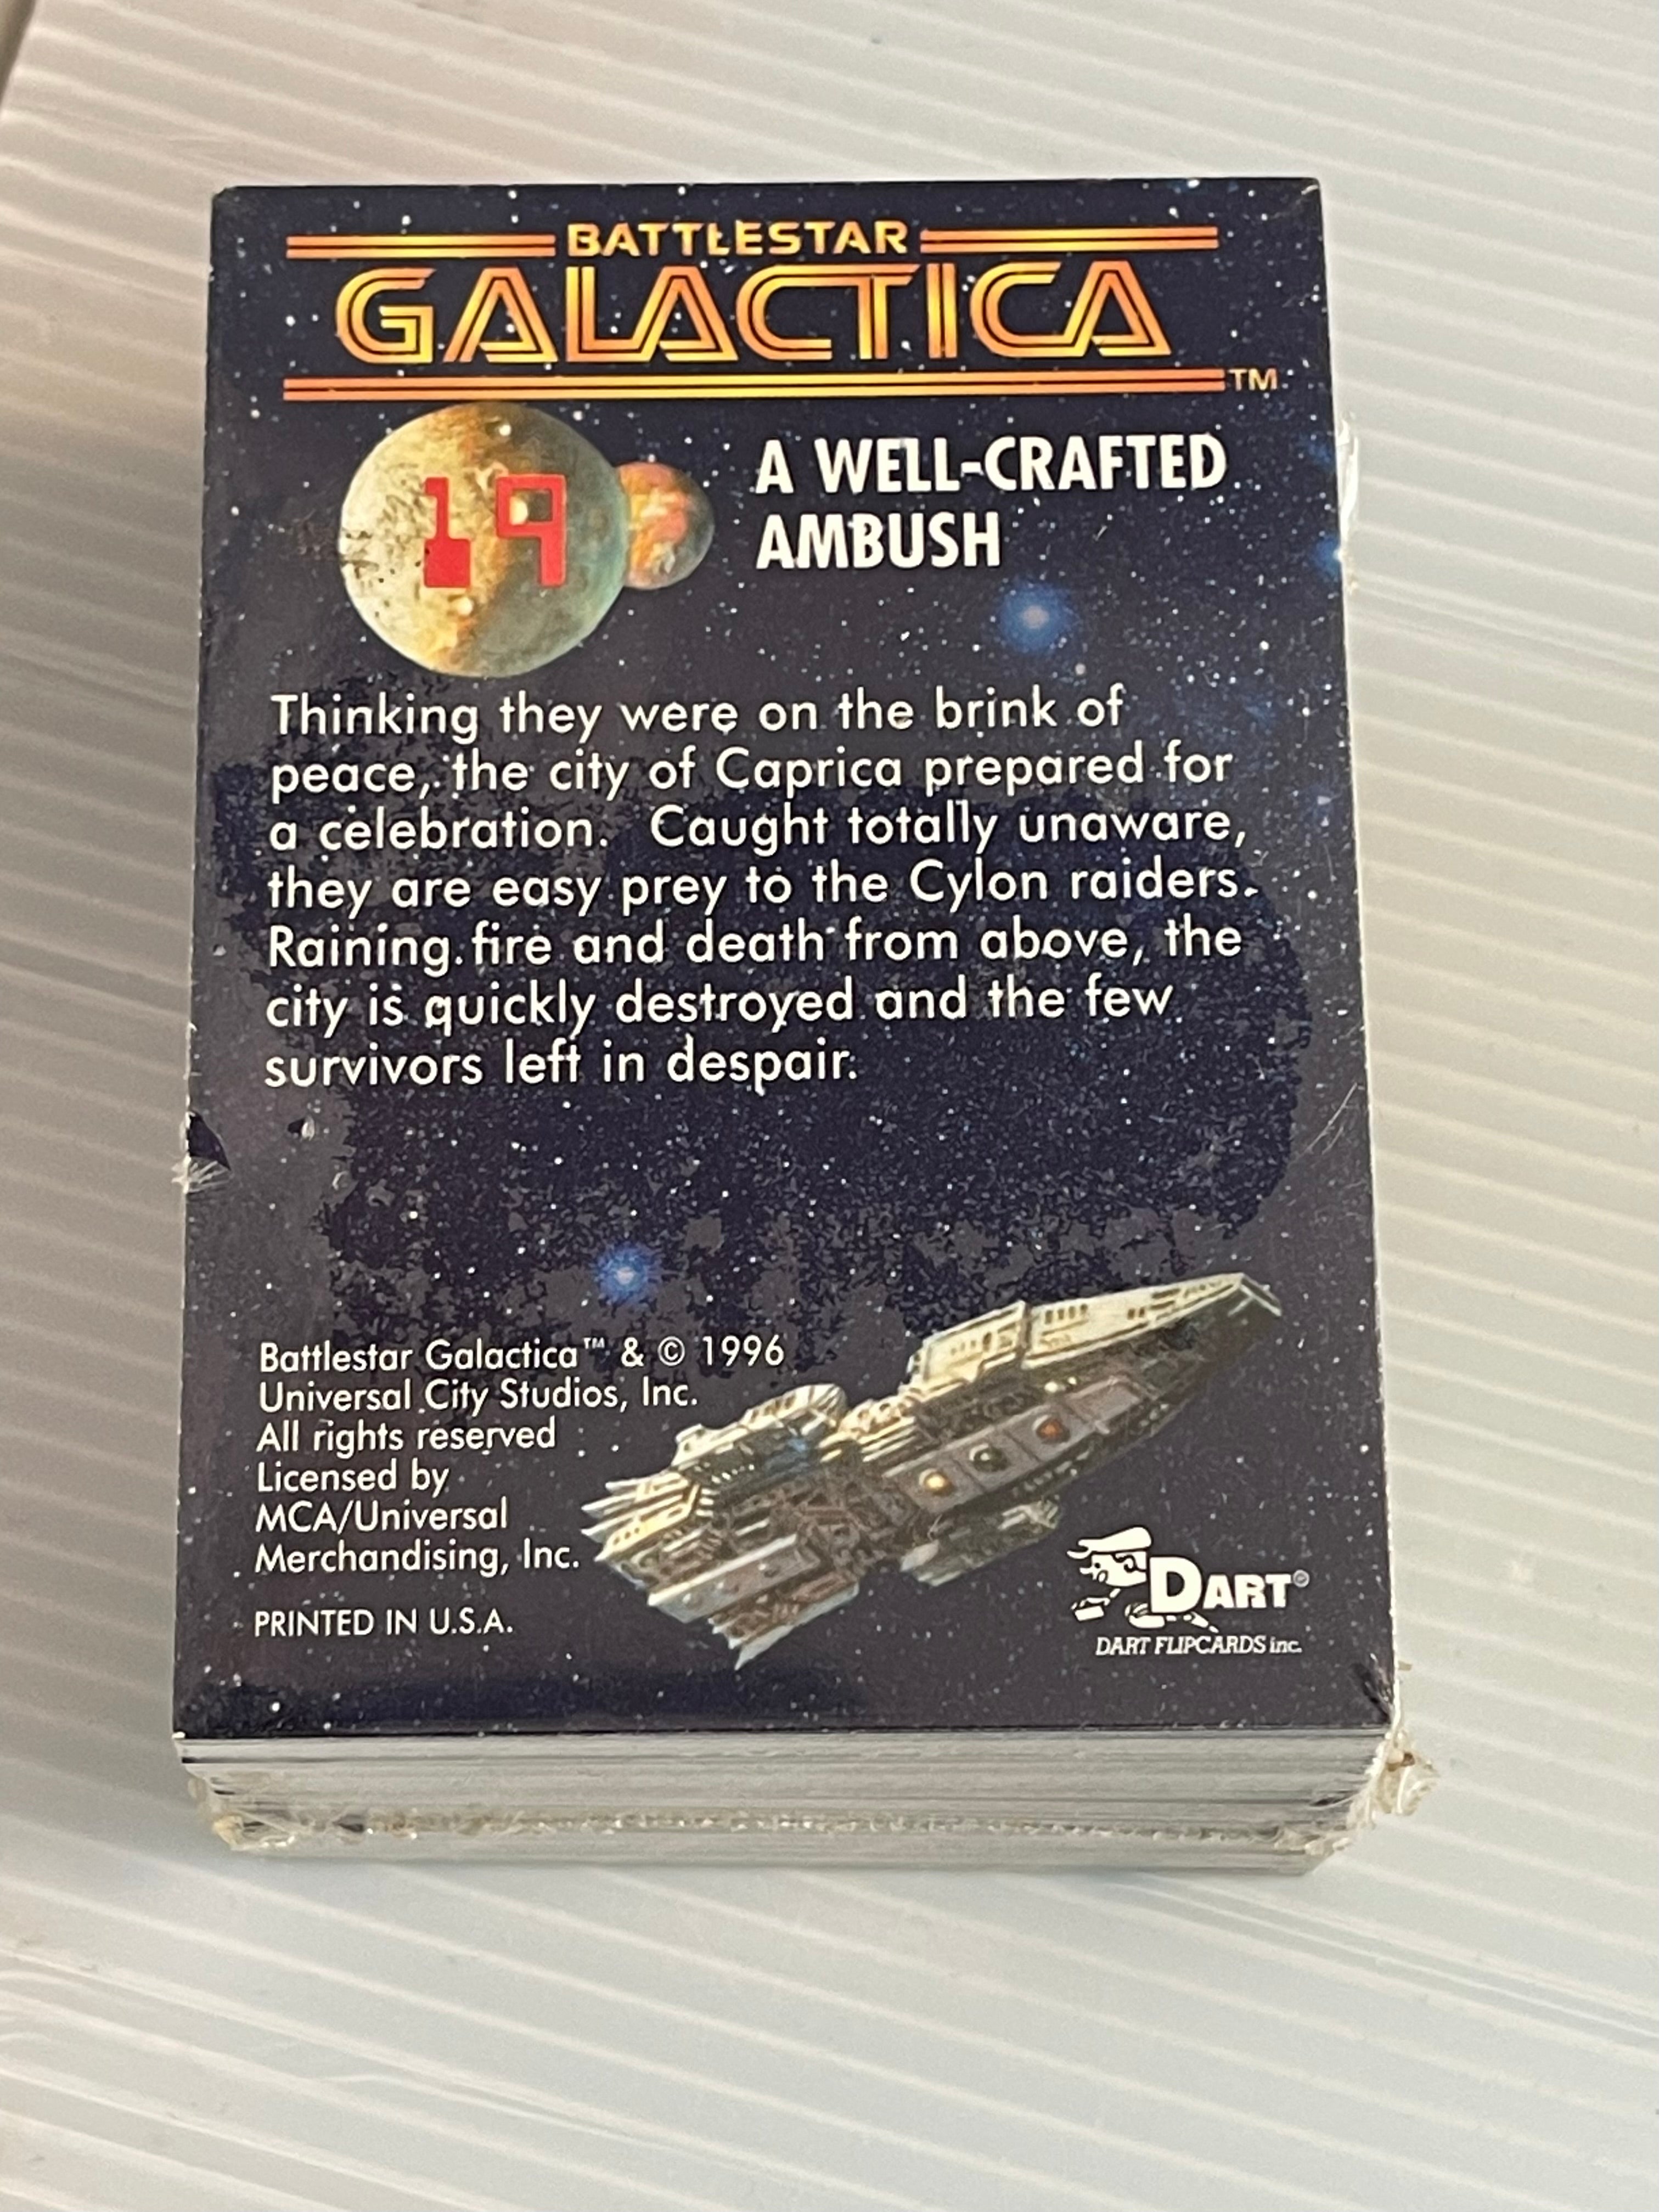 Battlestar Galactica Dart foil cards set 1996